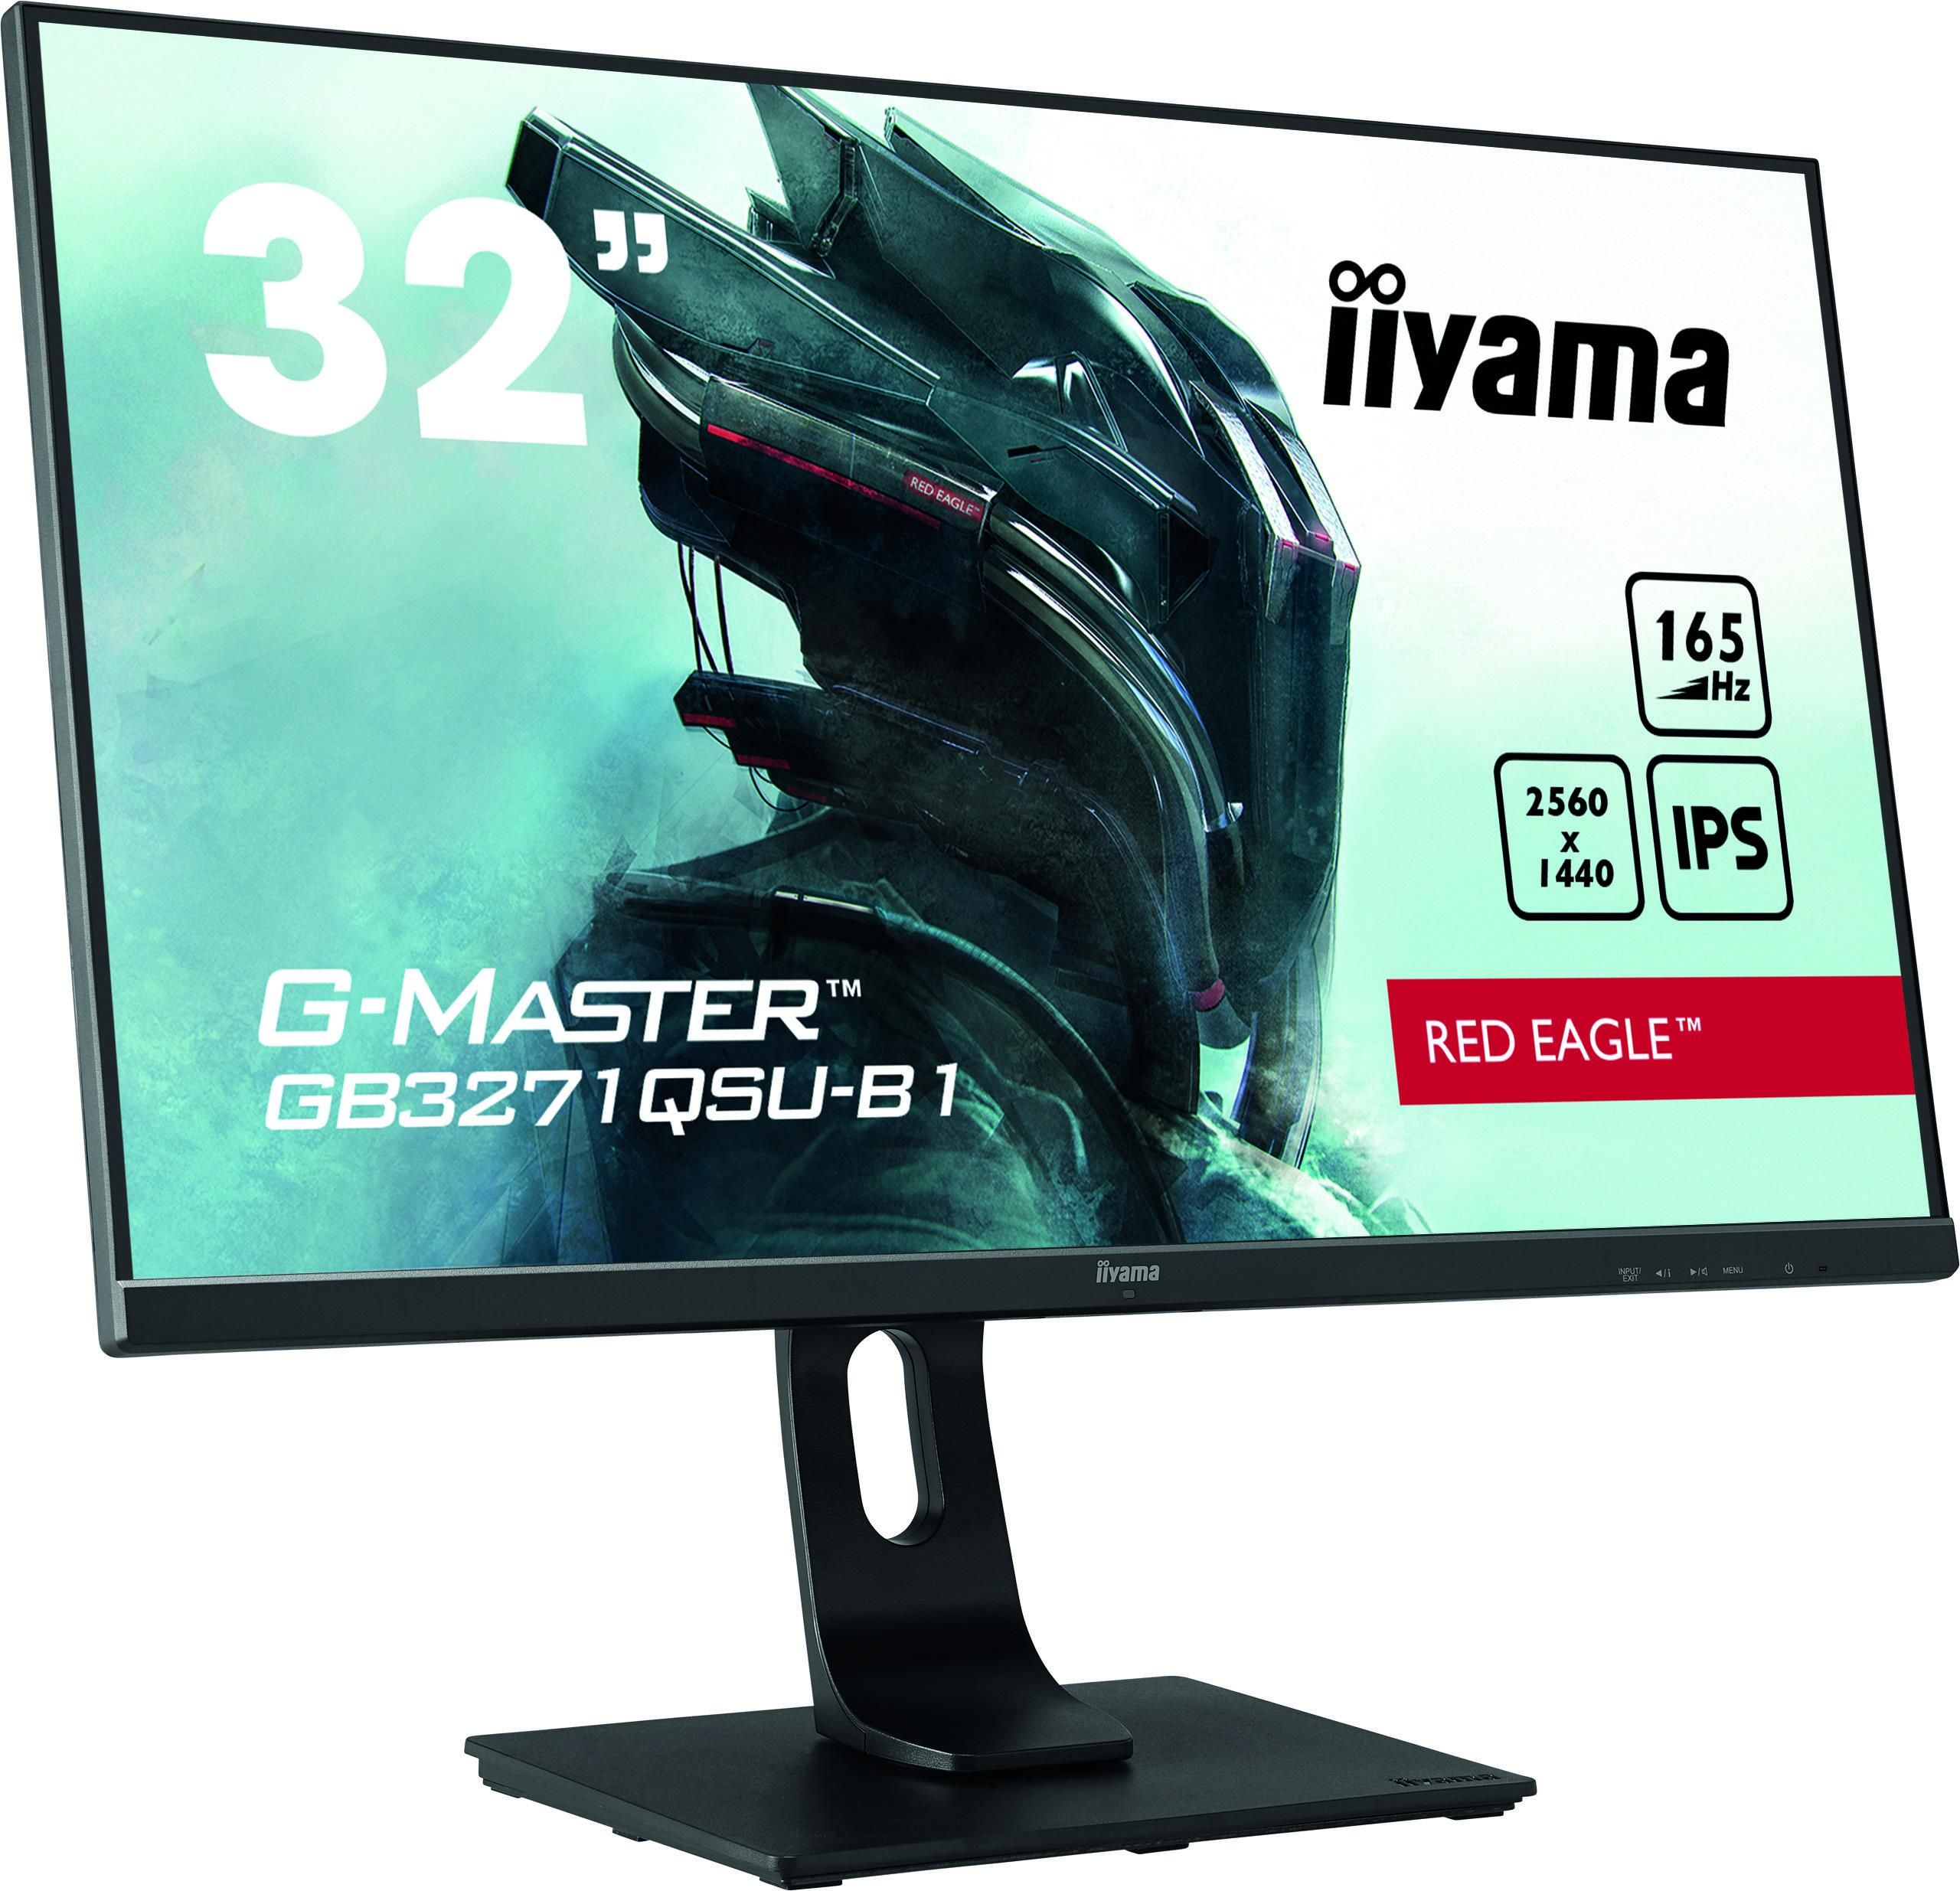 Iiyama G-MASTER GB3271QSU-B1 Monitor